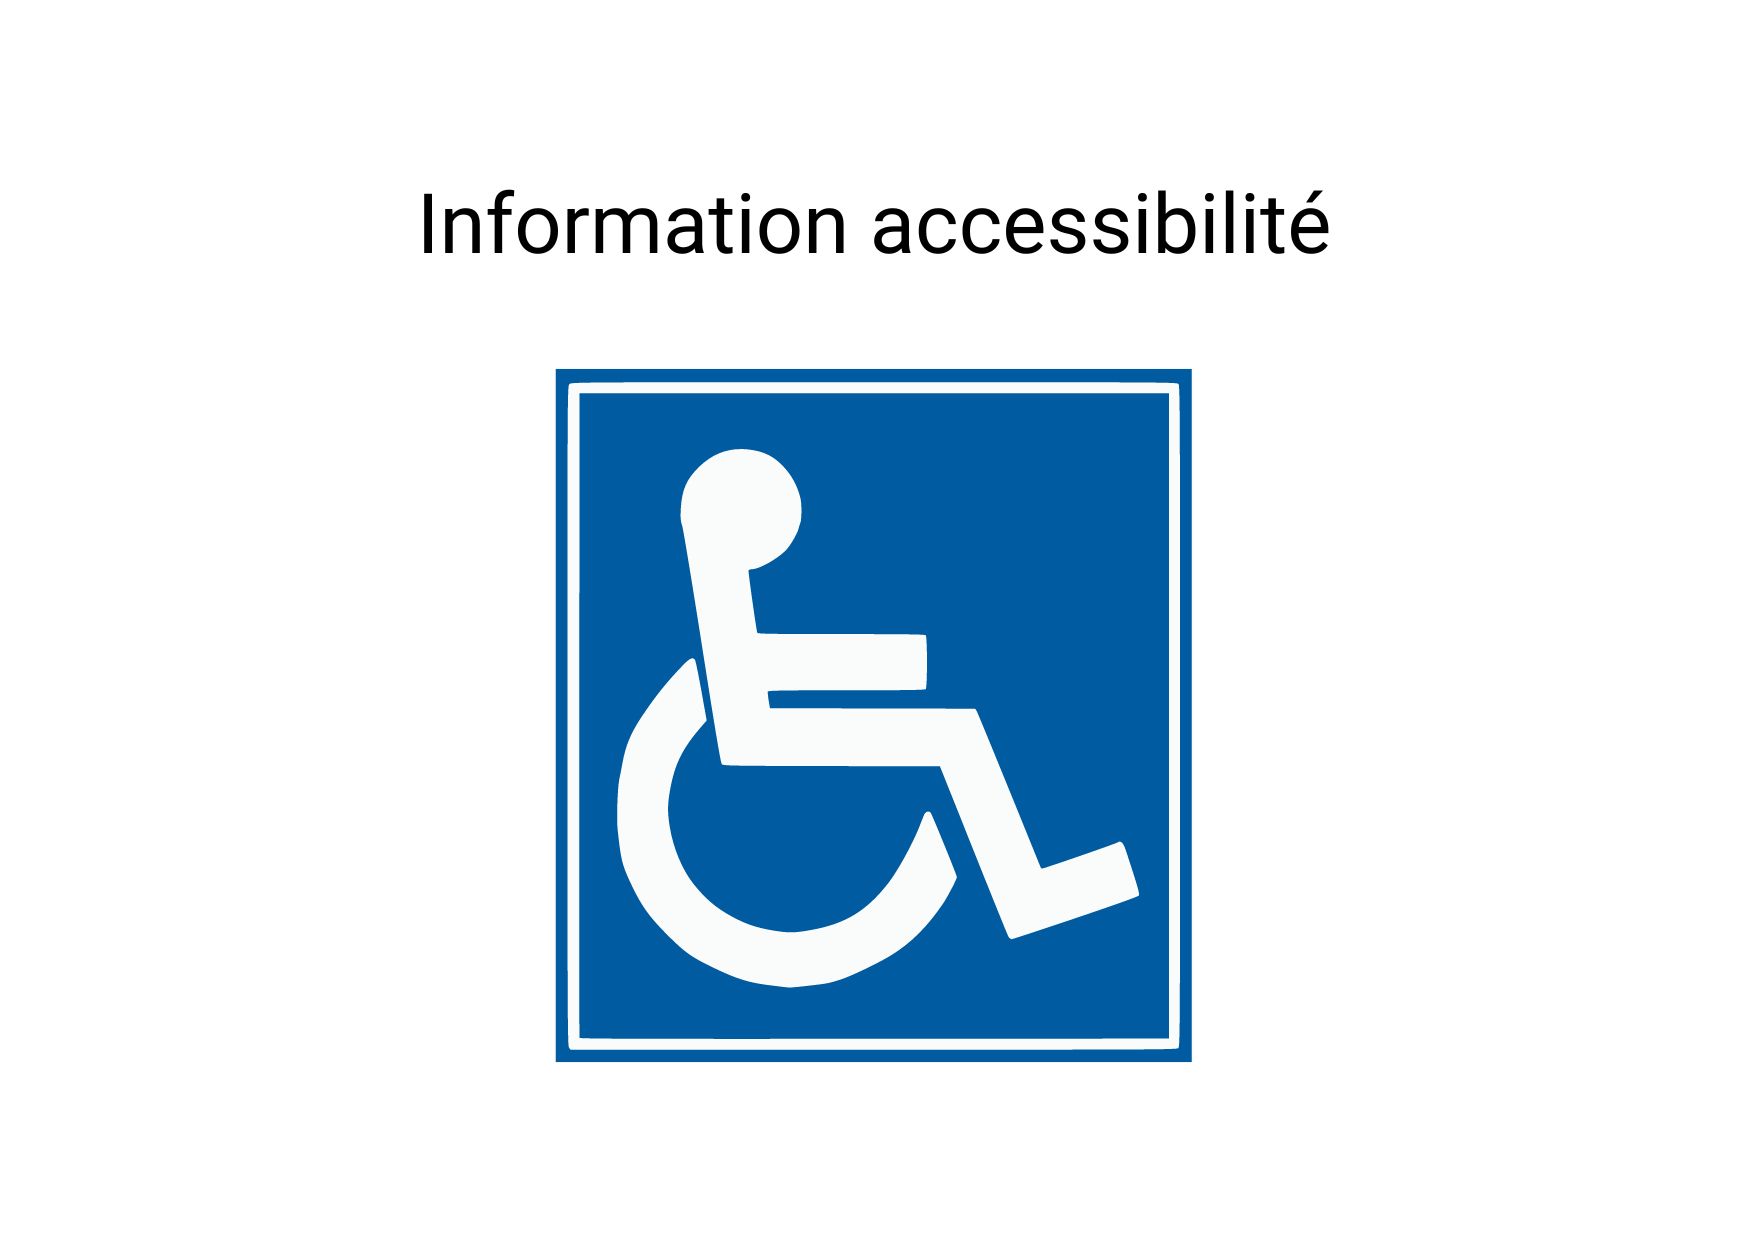 Information accessibilté